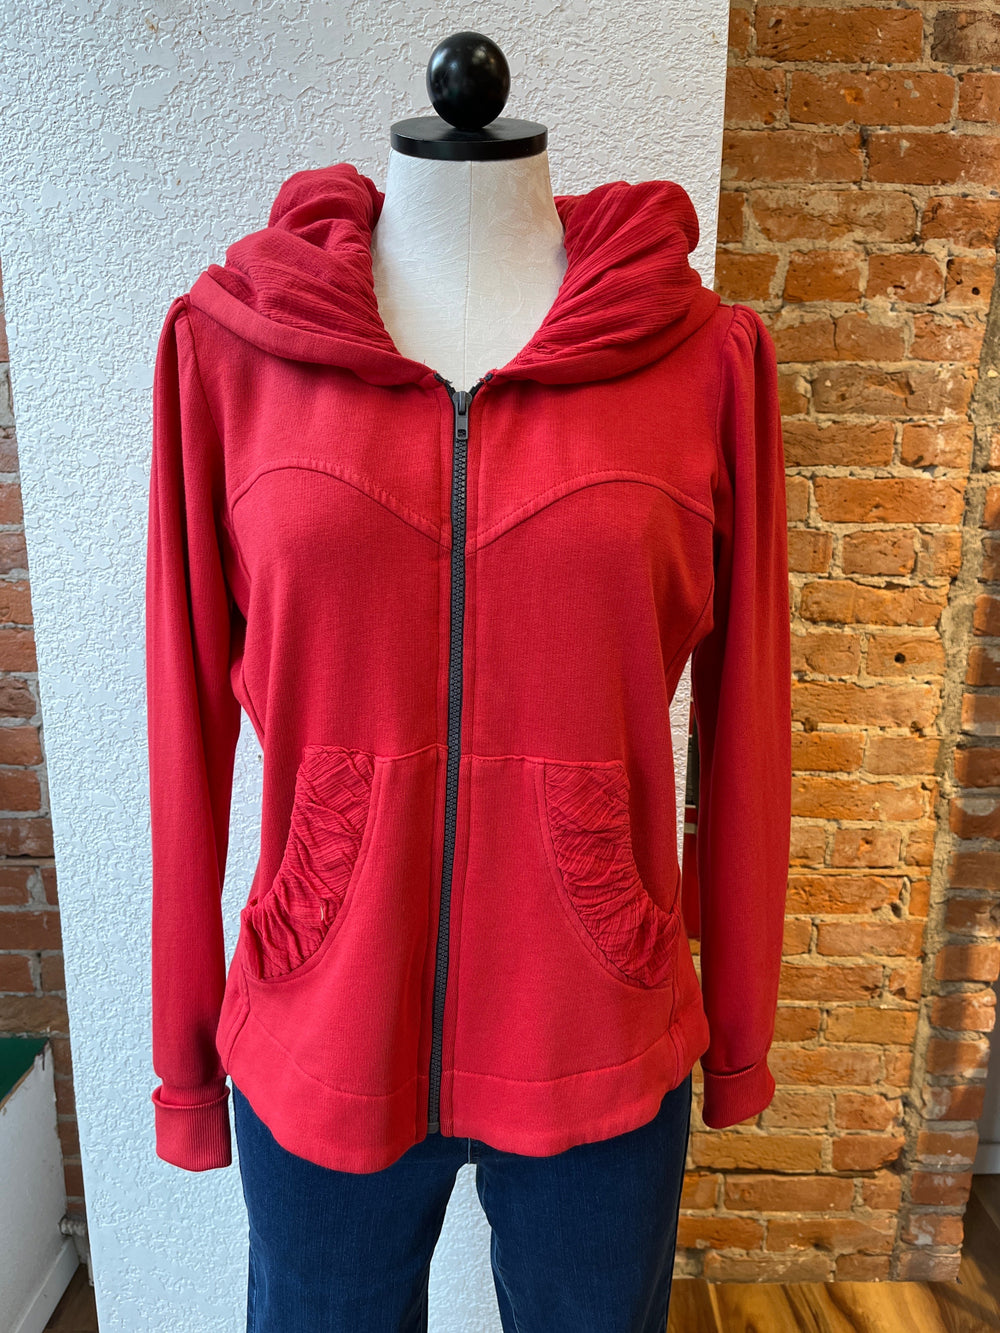 CMC hoodie jacket/coat 3261, short zip SALE XS, S